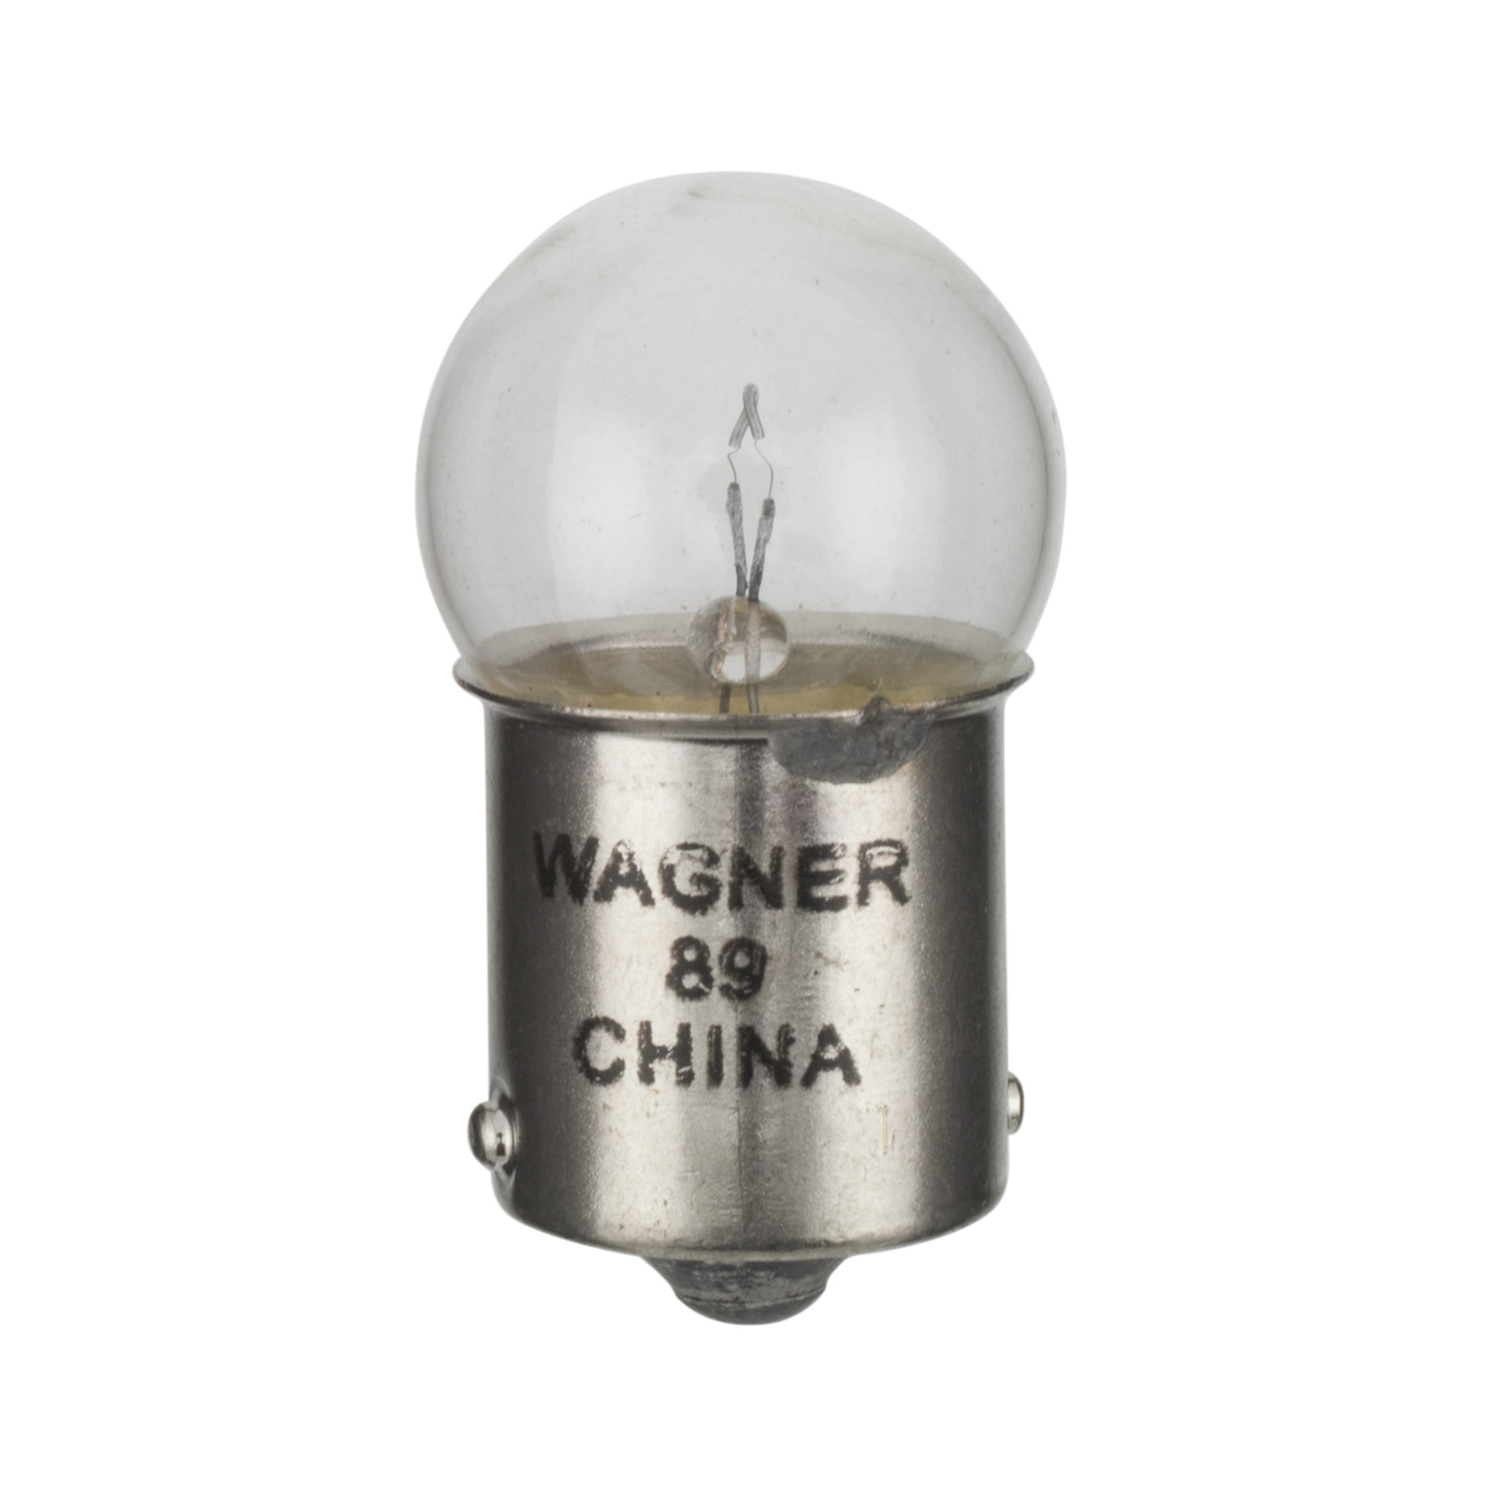 WAGNER LIGHTING - Miniature Lamp Boxed Parking Brake Warning Light - WLP 89